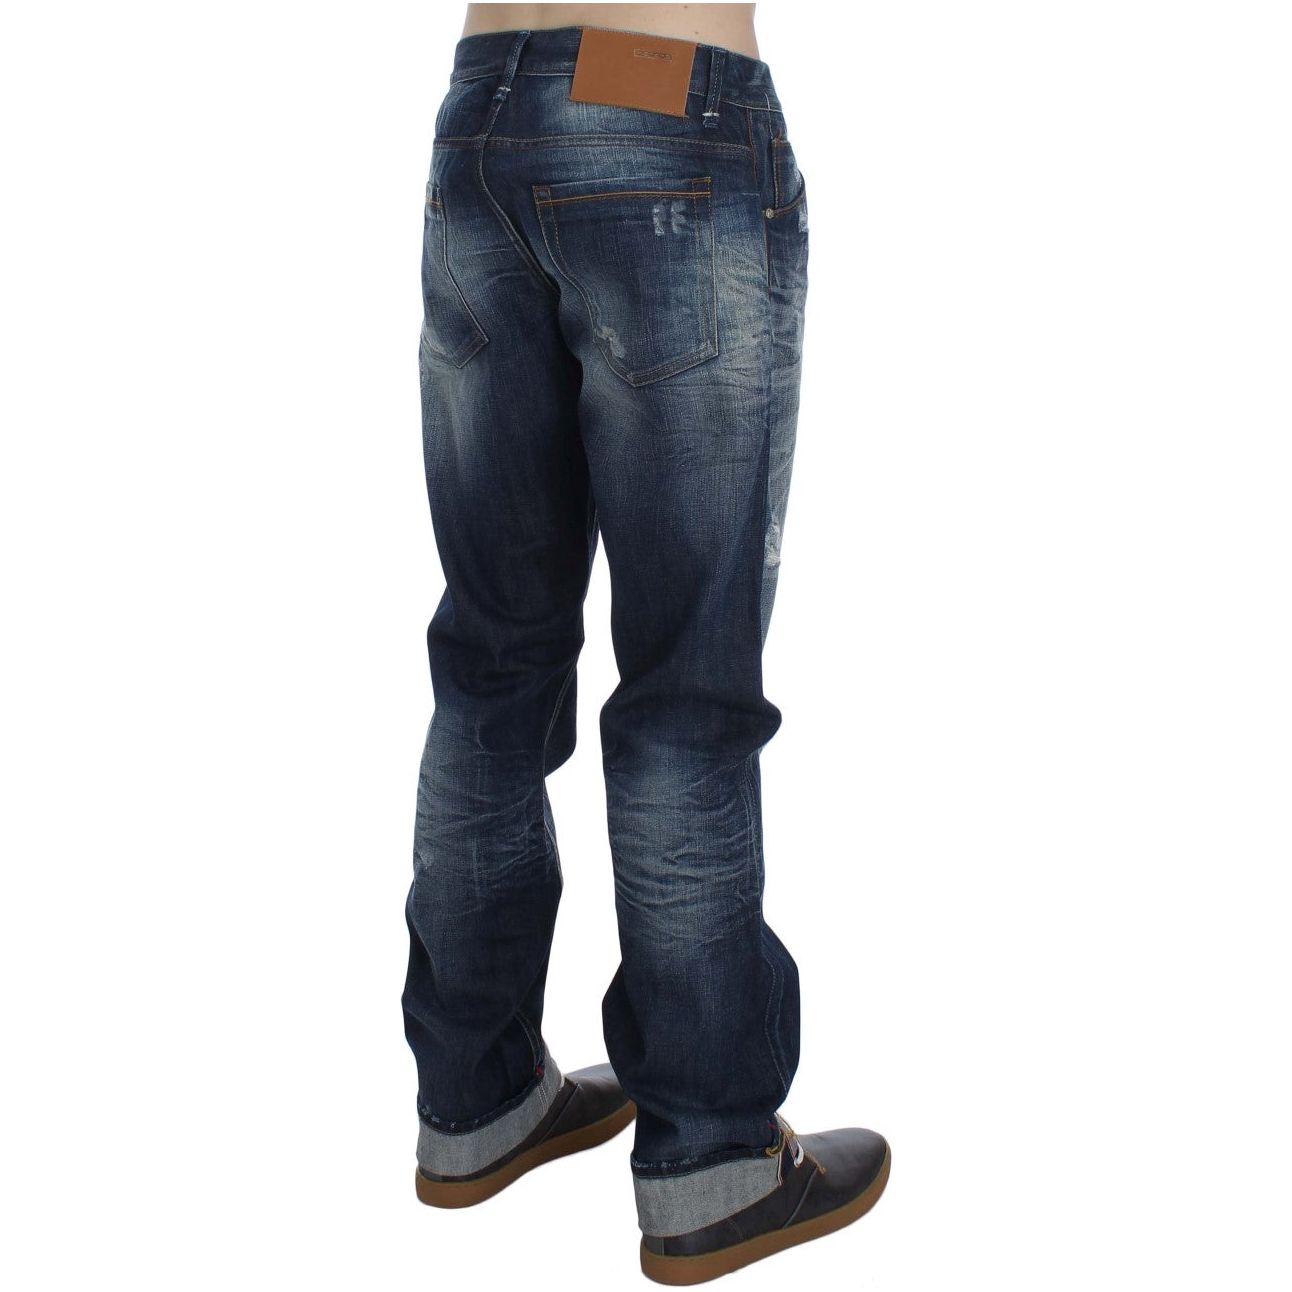 Acht Authentic Regular Fit Blue Wash Jeans blue-wash-cotton-denim-regular-fit-jeans-2 292687-blue-wash-cotton-denim-regular-fit-jeans-4.jpg